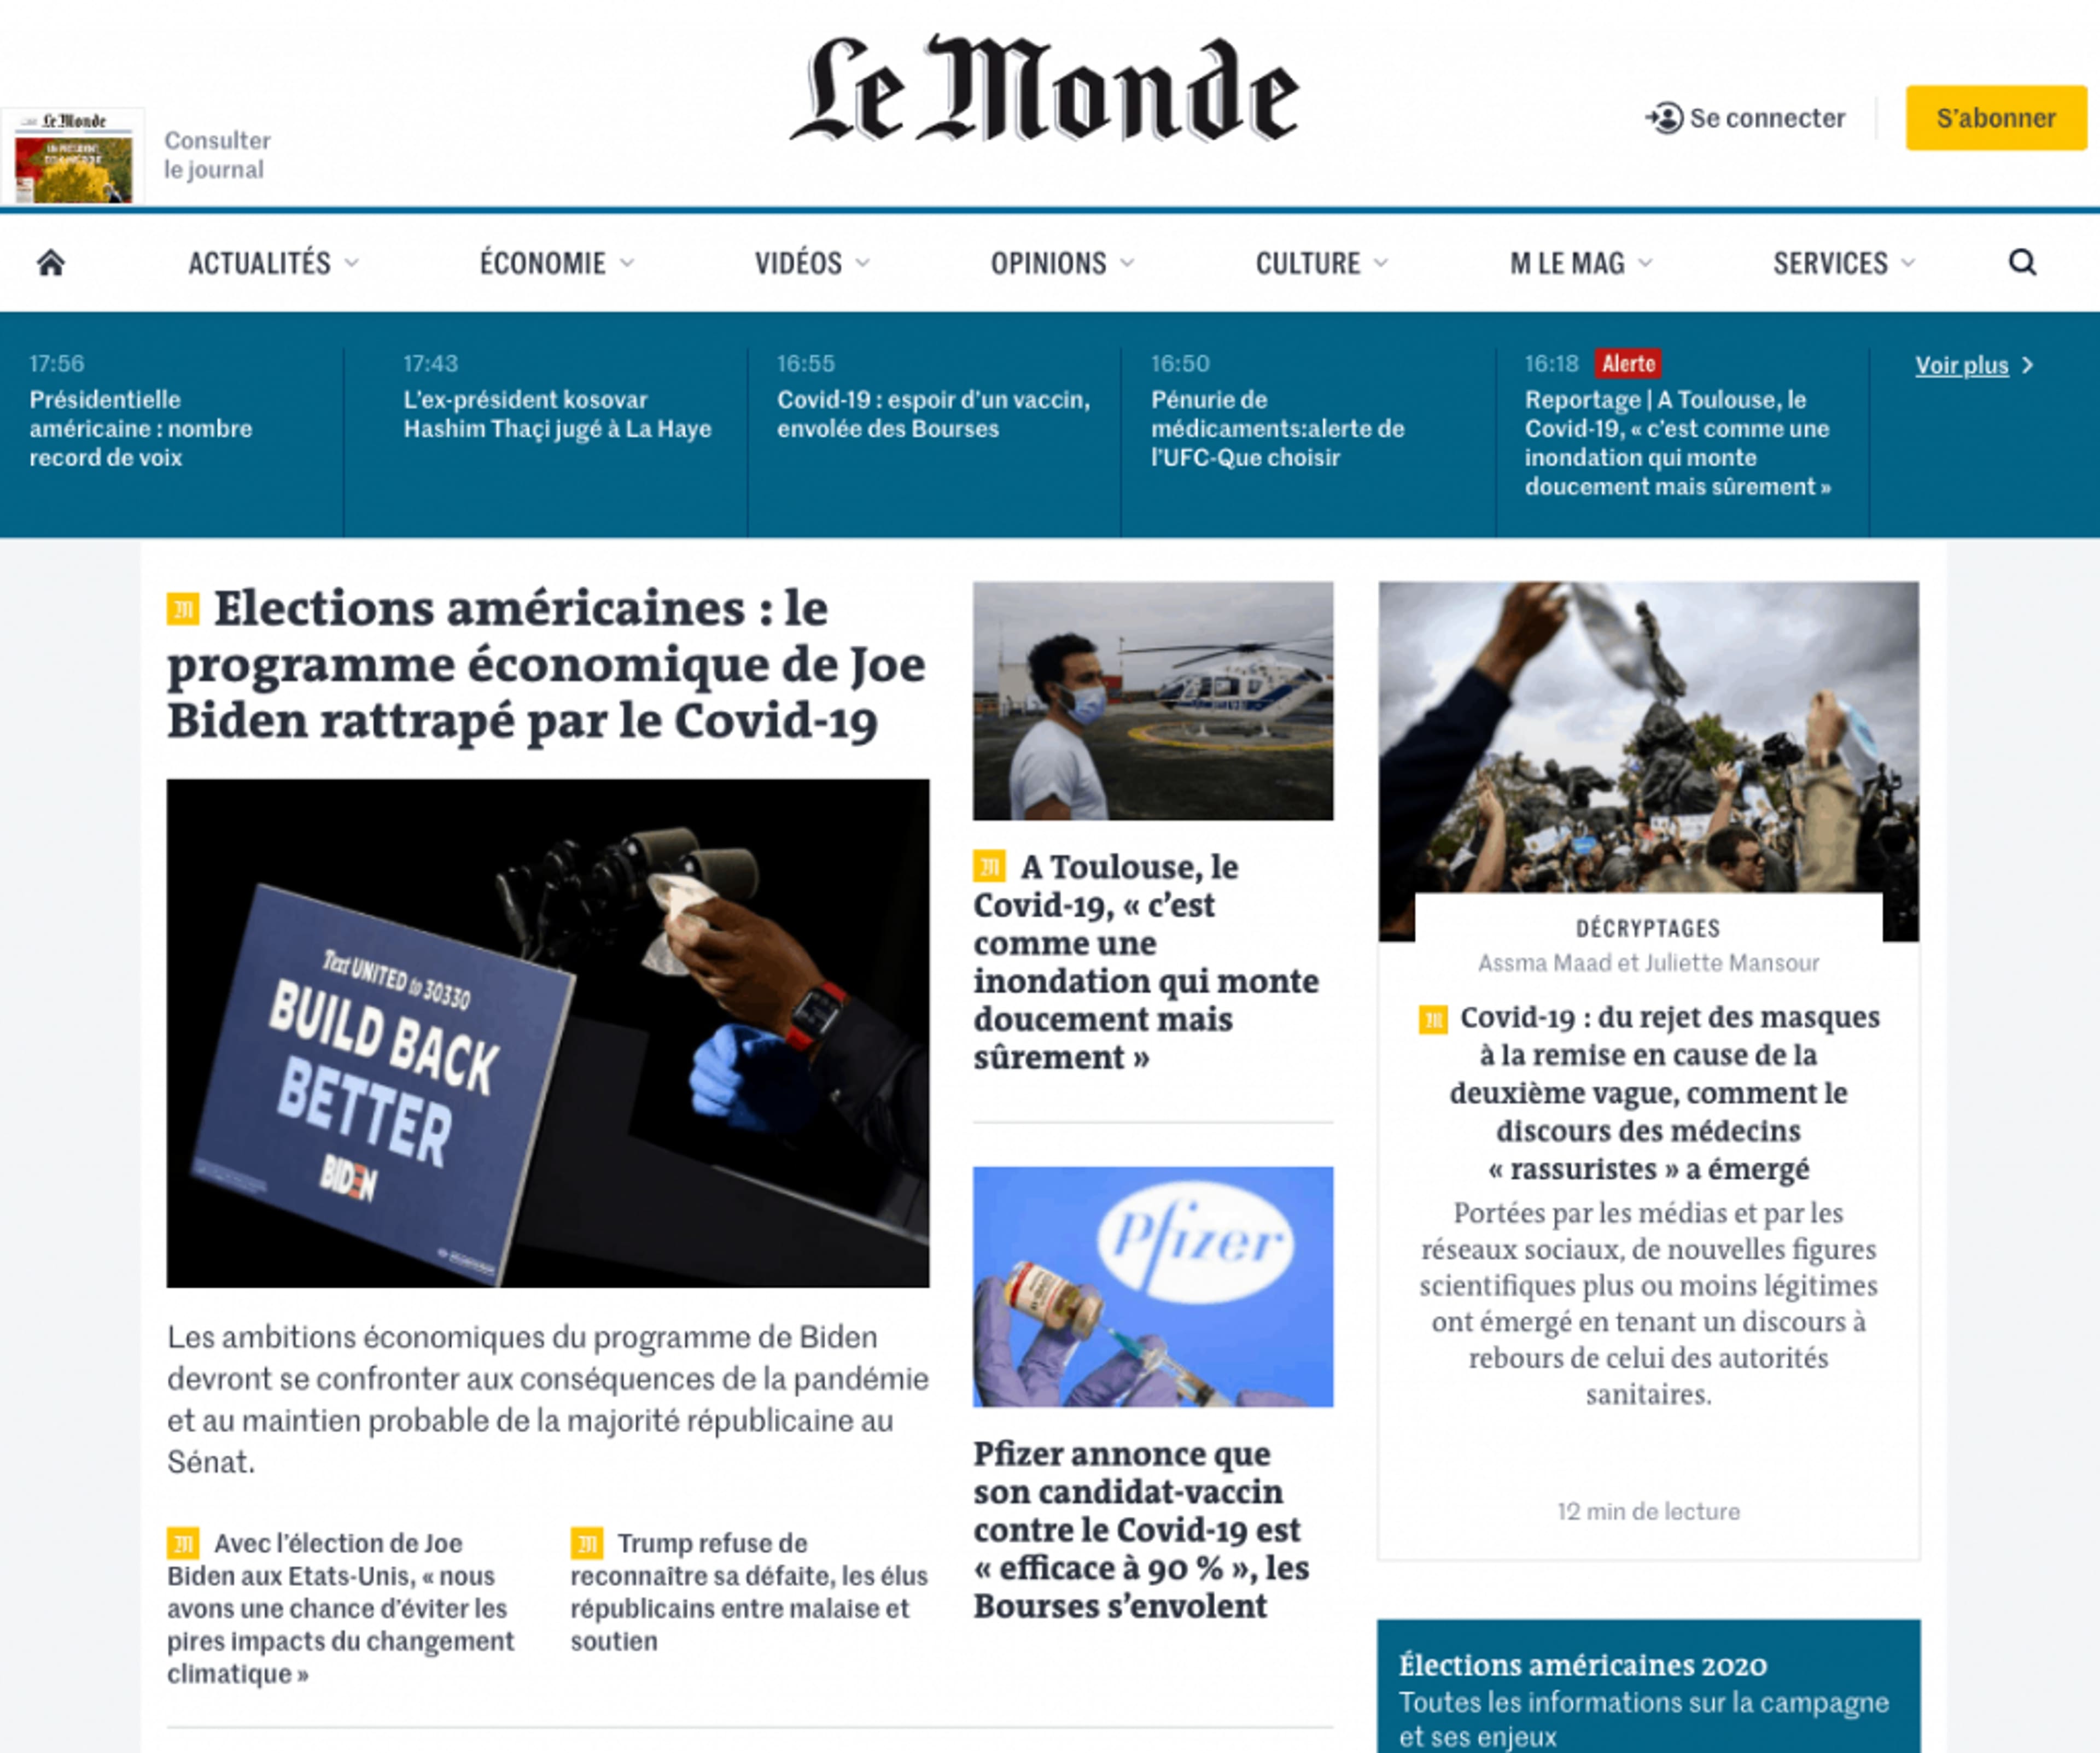 La page d'accueil du site Le Monde que nous allons scraper